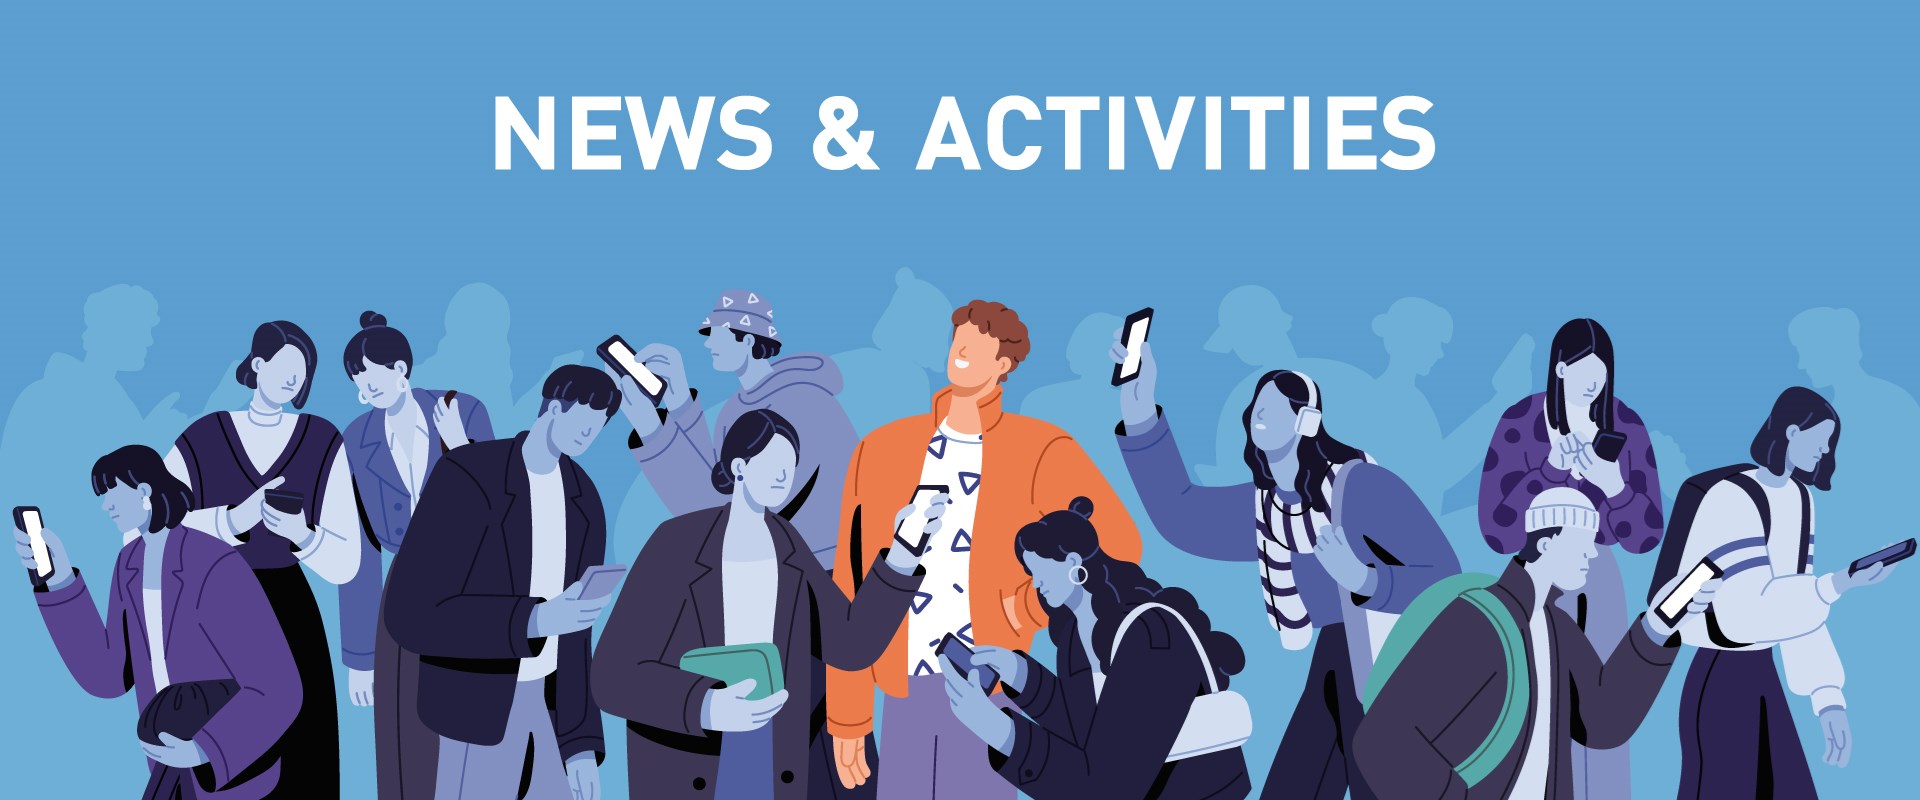 News & Activities